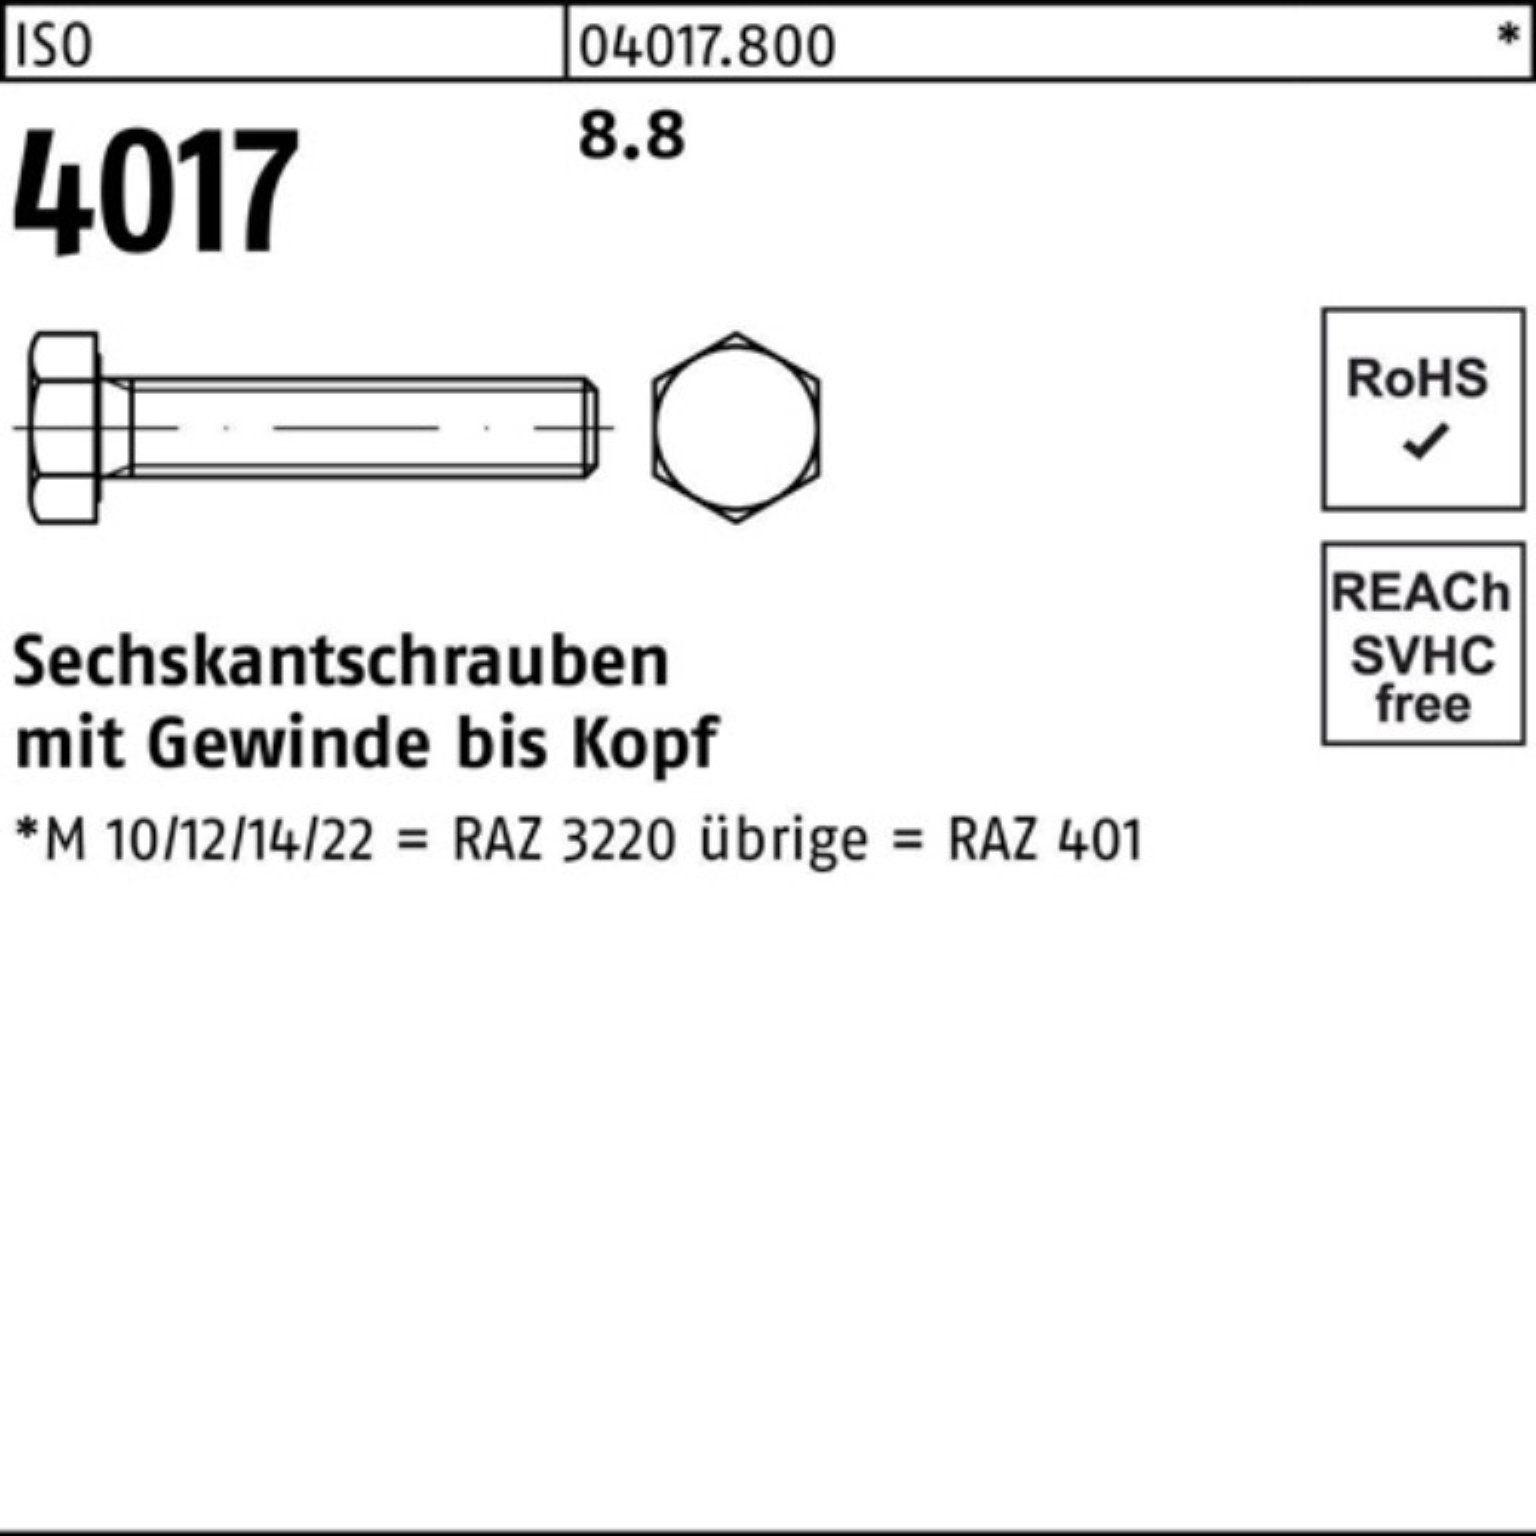 VG ISO Sechskantschraube Bufab Stück M42x 4017 Sechskantschraube 170 8.8 1 Pack 401 100er ISO